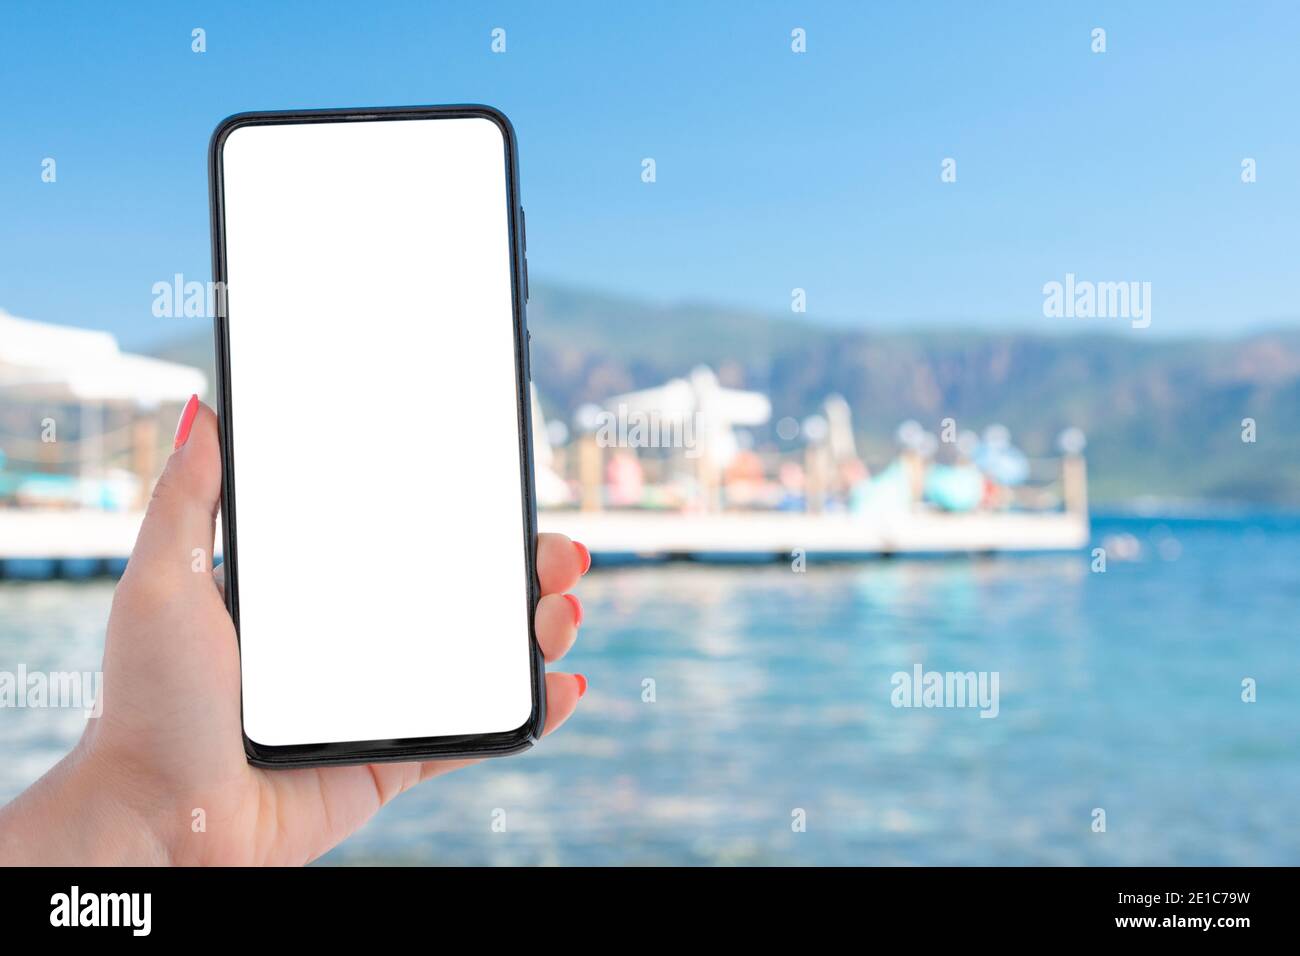 Imagen de una mujer que sostiene una mano celular teléfono móvil  inteligente con pantalla de escritorio en blanco junto al mar y el cielo  azul. Concepto de uso de internet para vacaciones